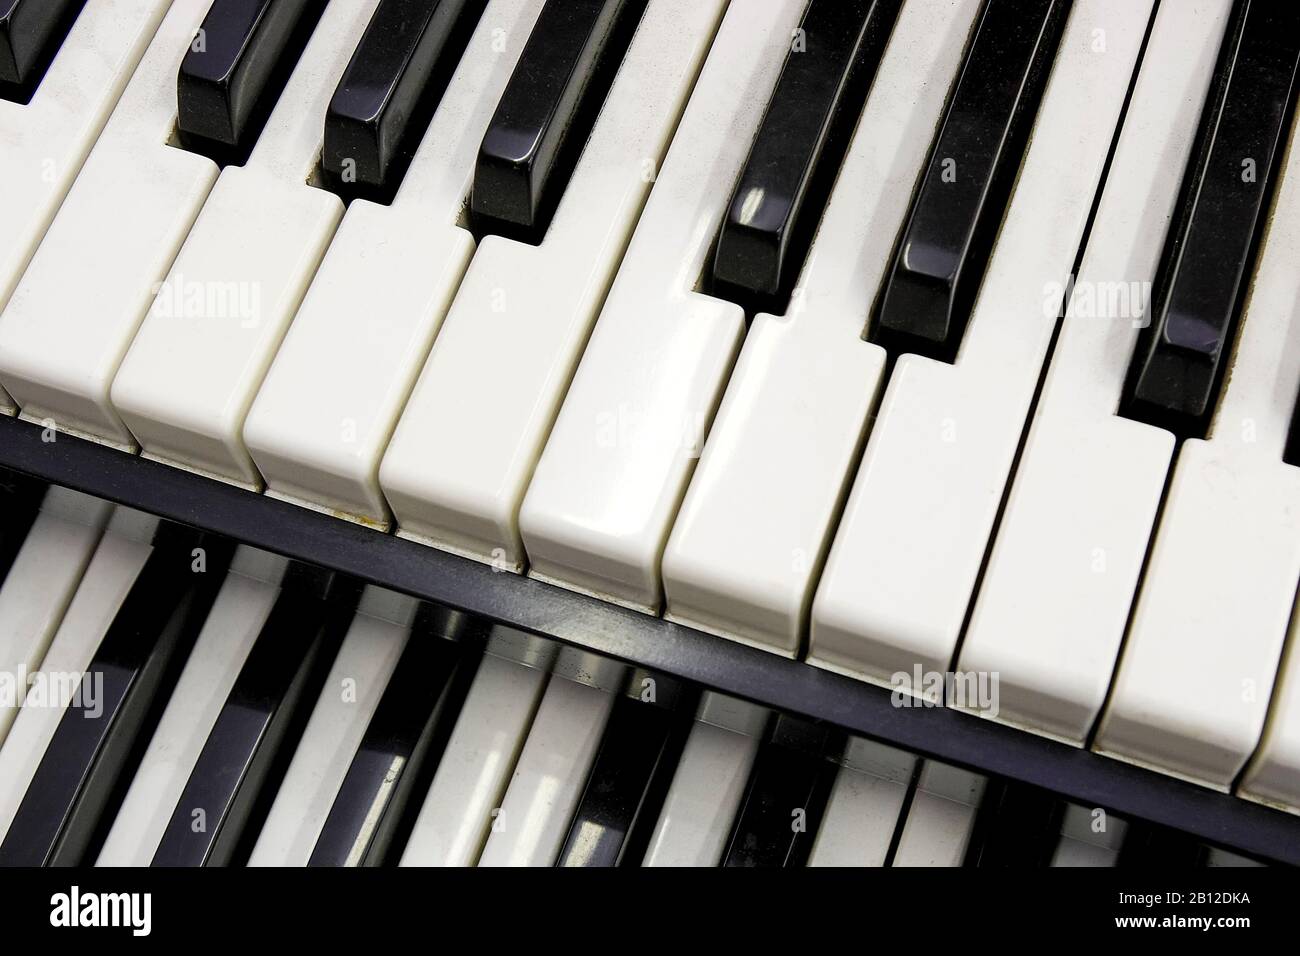 Piano keys-close-up Stock Photo